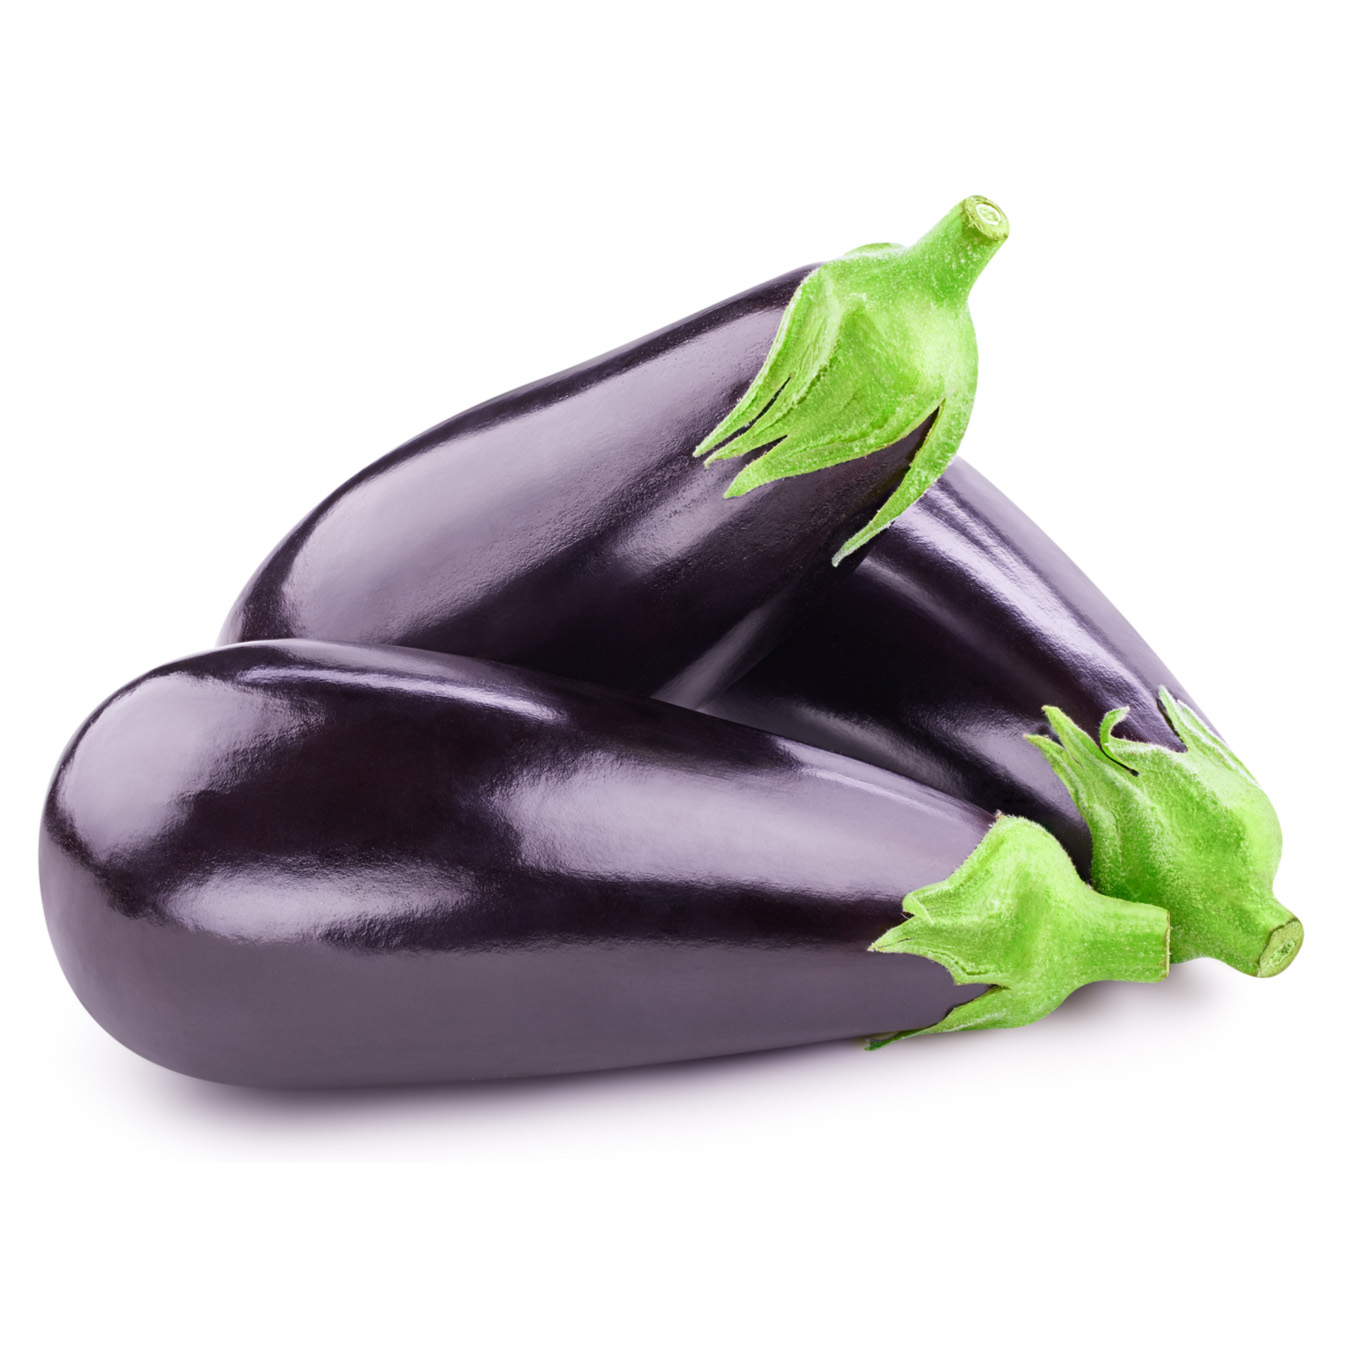 Eggplant import